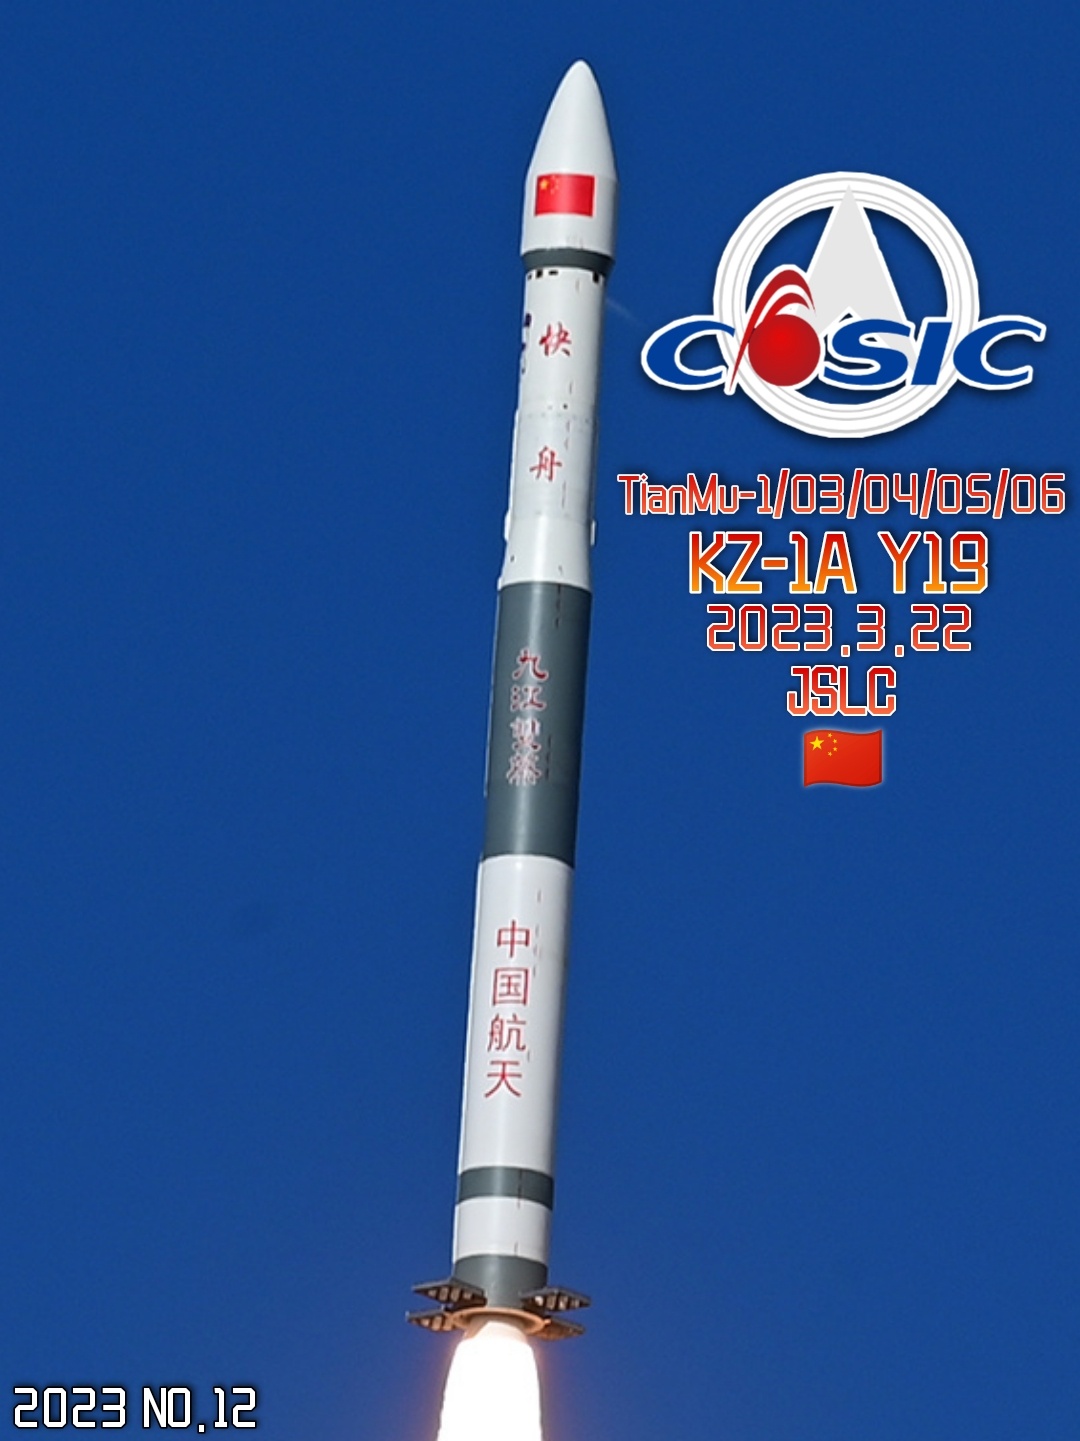 KZ-1A Y19 (Tianmu-1 03-06) - JSLC - 21.3.2023 9da82b11